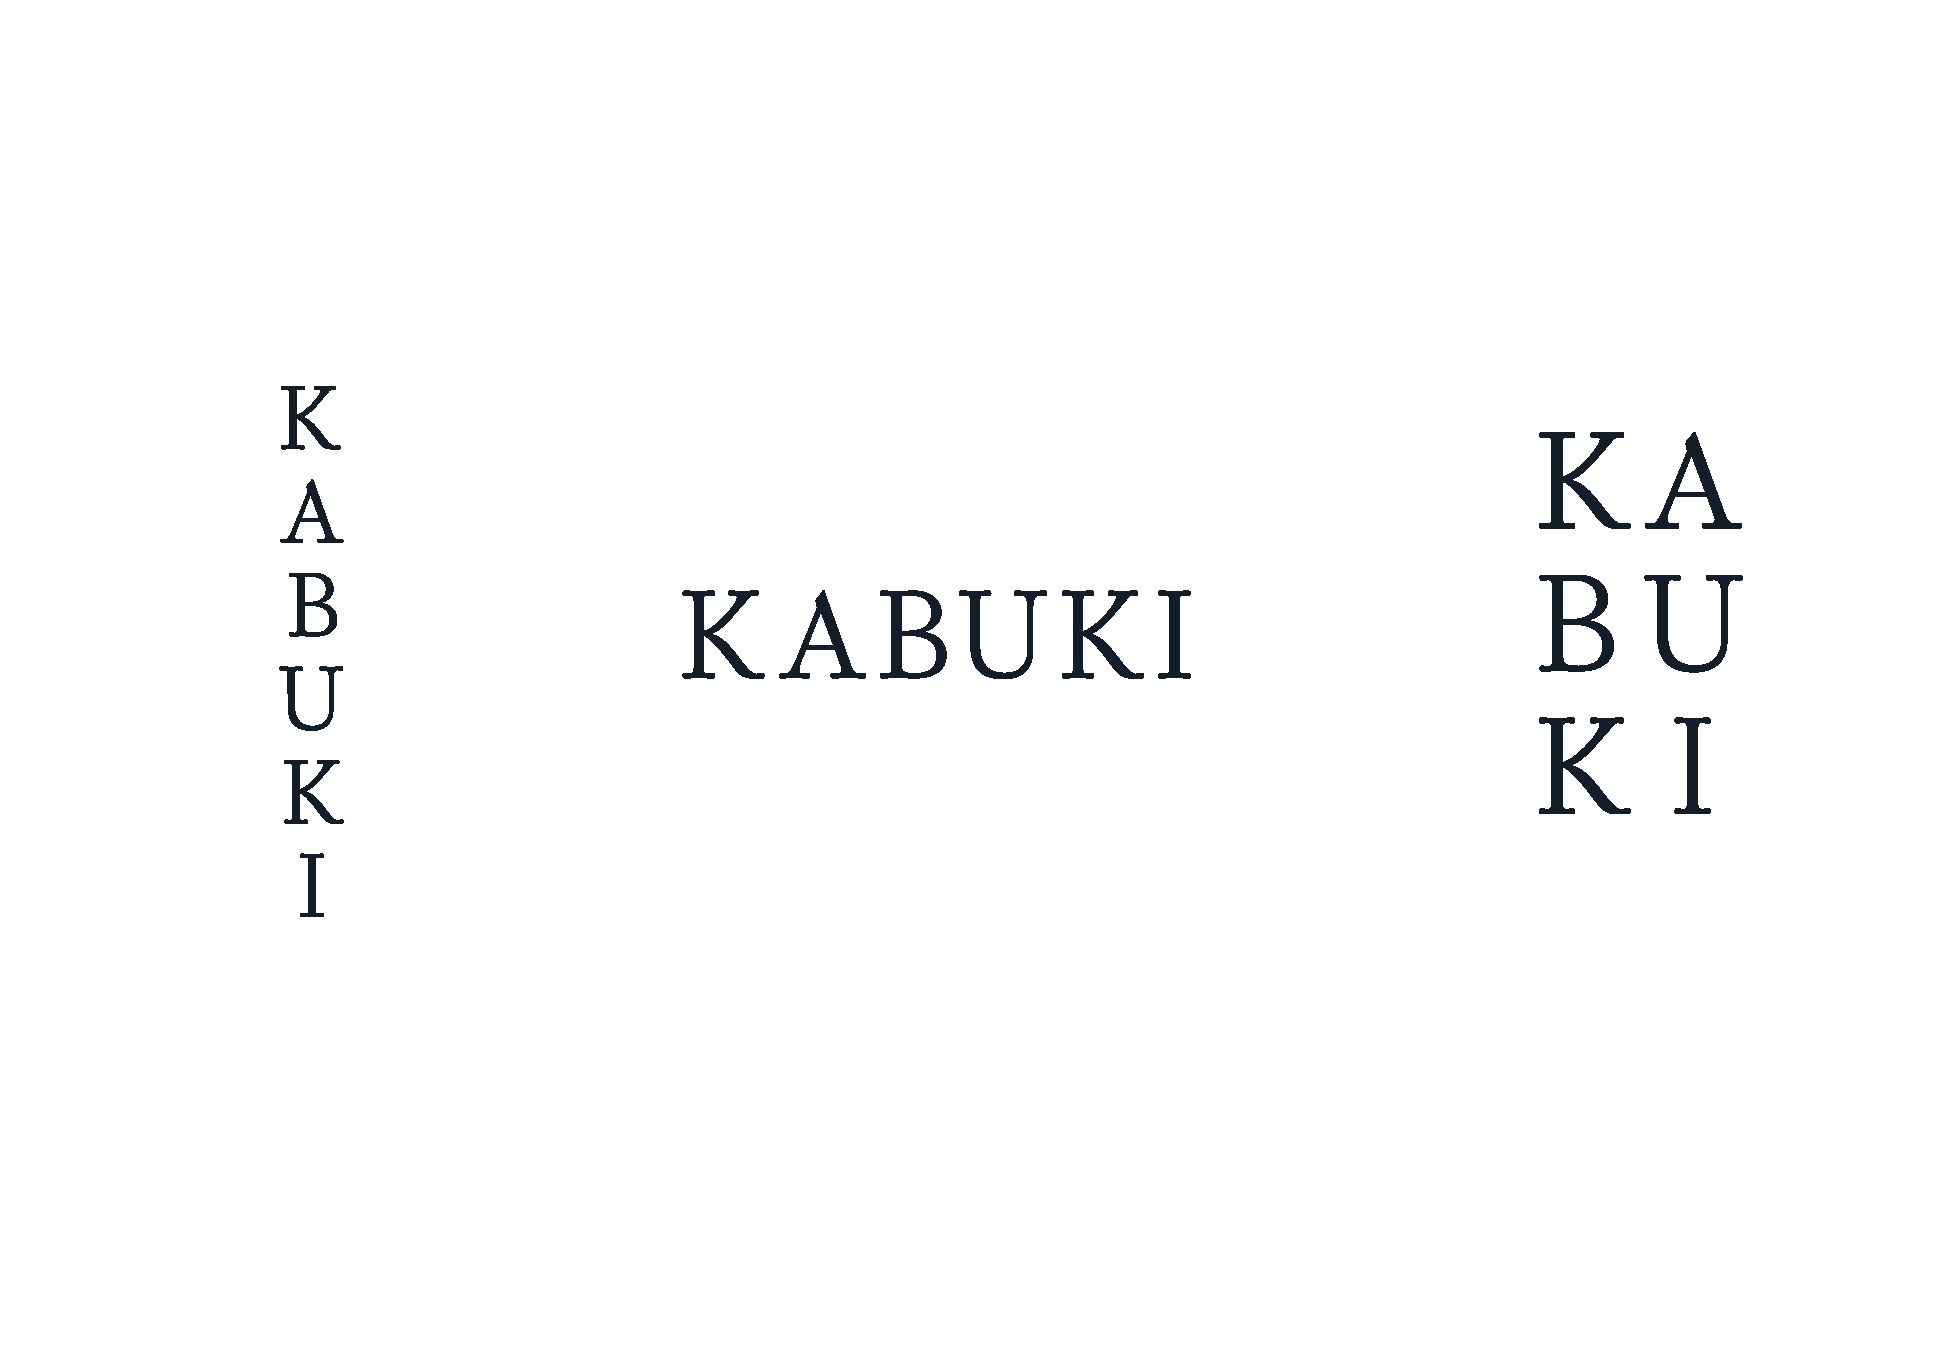 Grupo Kabuki reordena su estructura empresarial